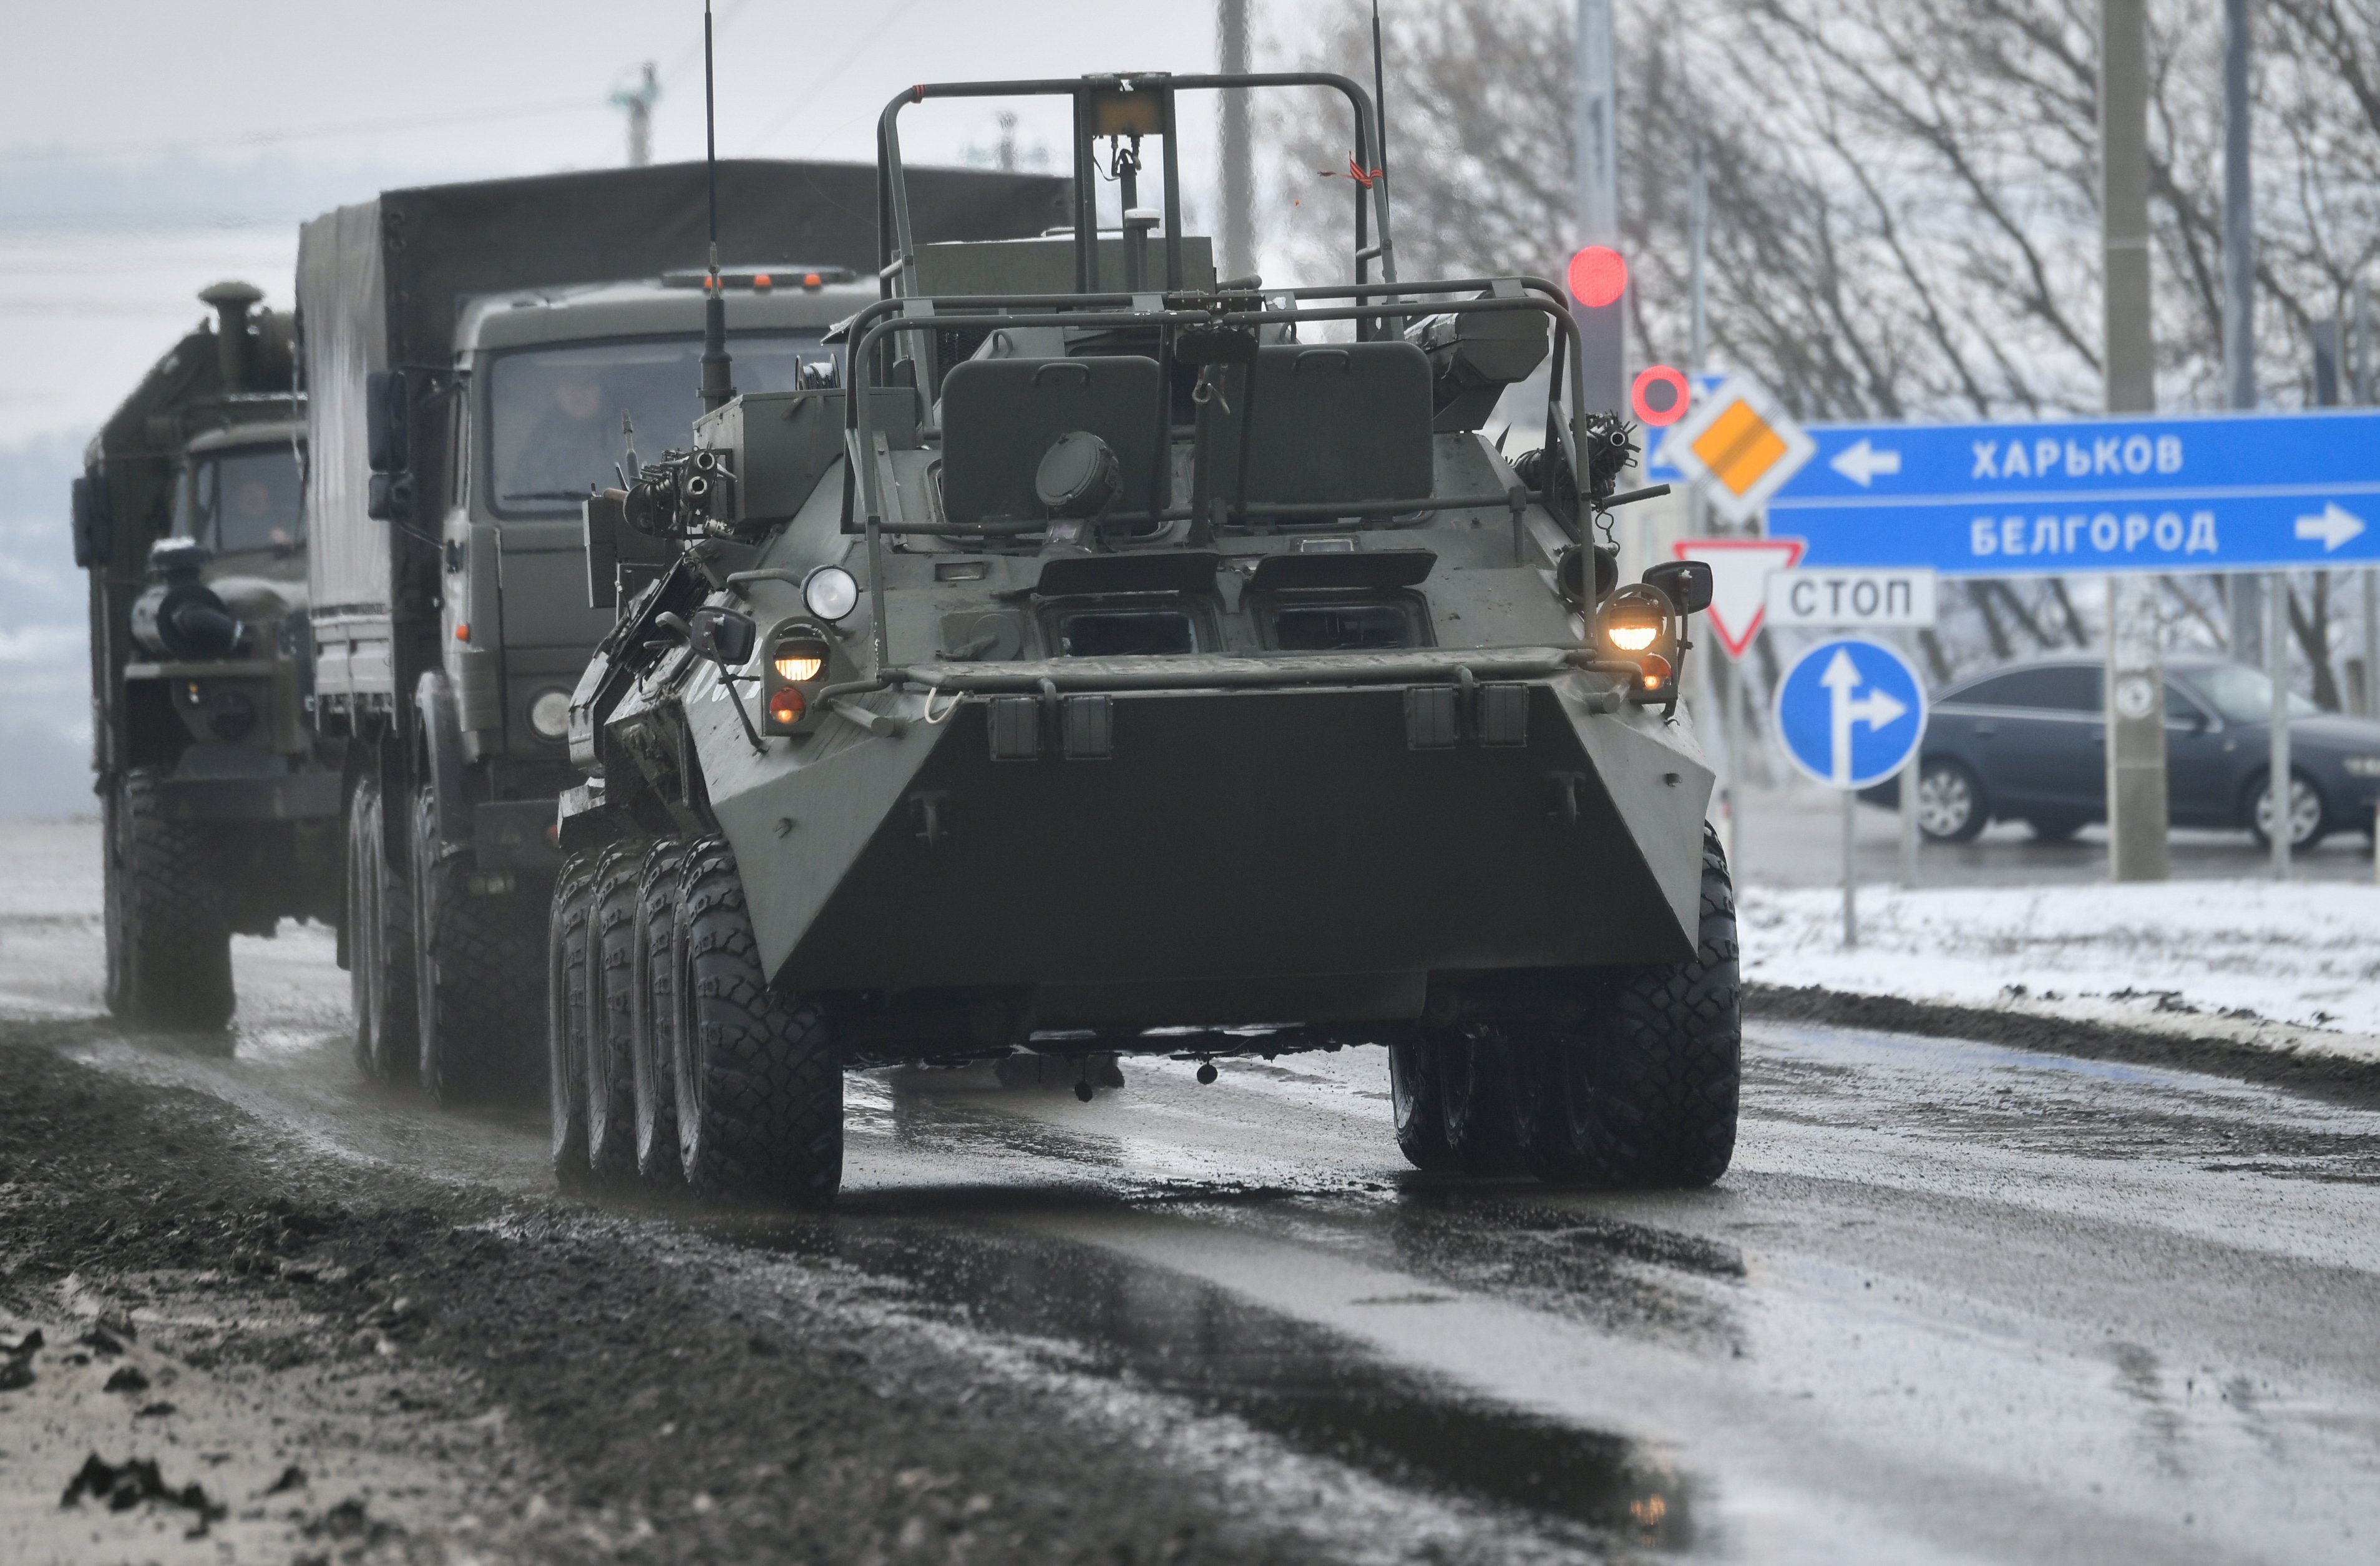 Kyiv se desmarca de la incursión a Bélgorod: son rusos descontentos